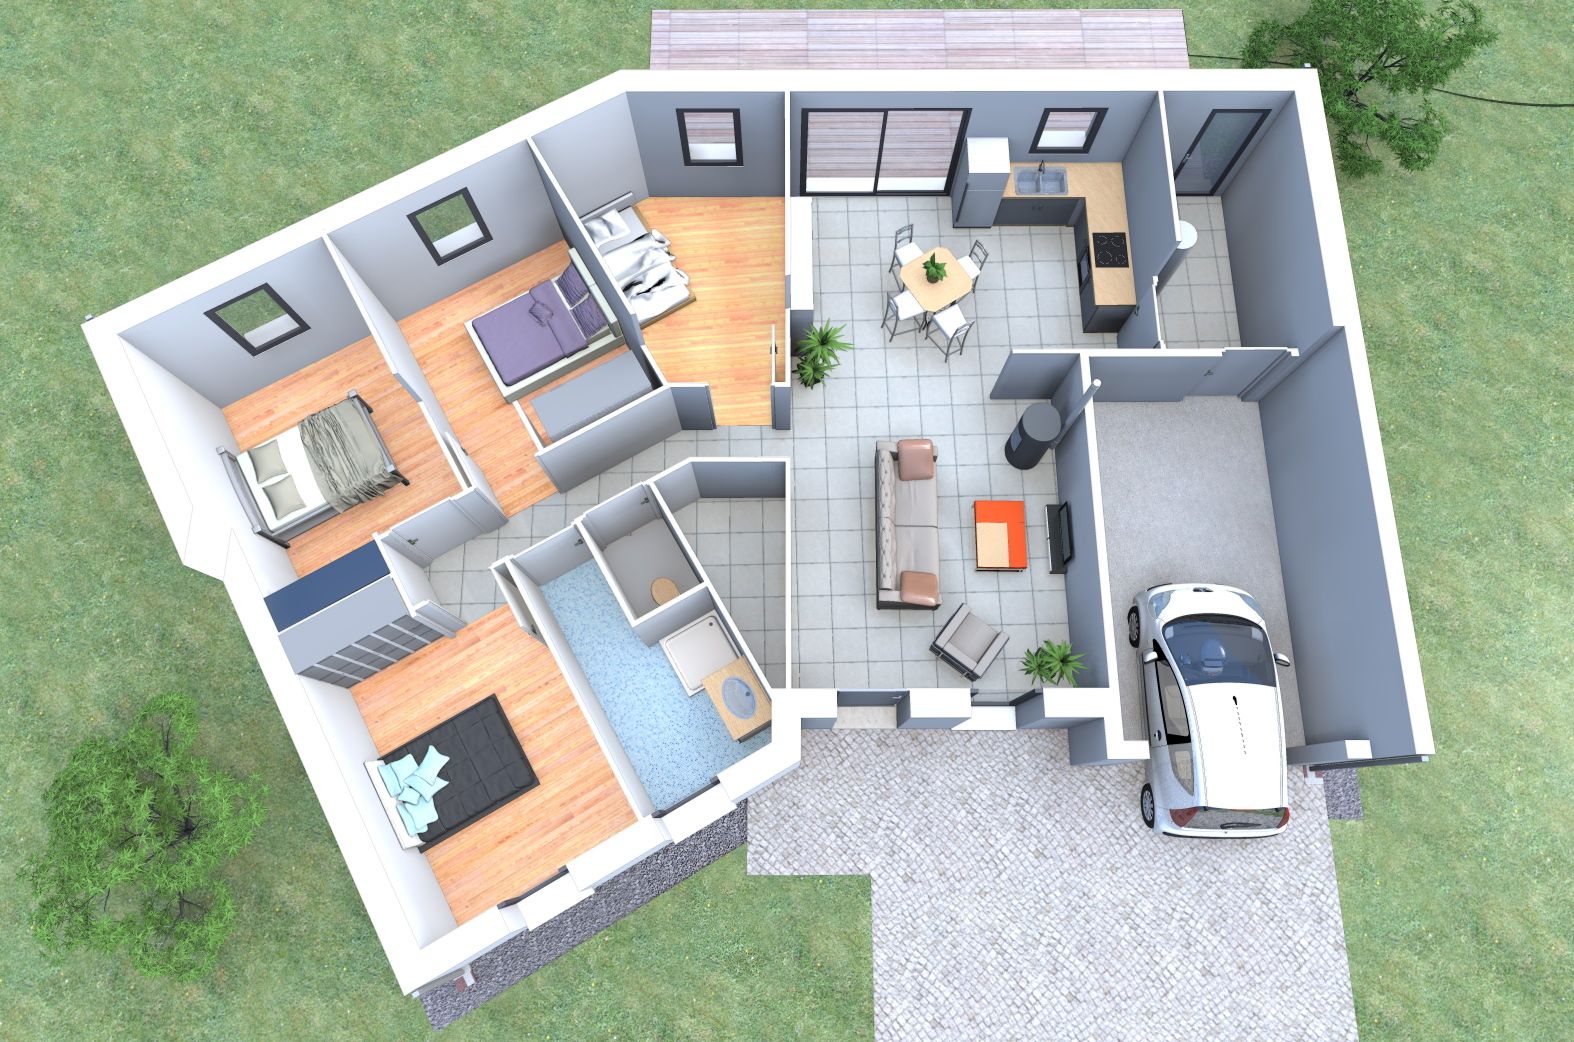 Plan de maison 4 chambres 3d